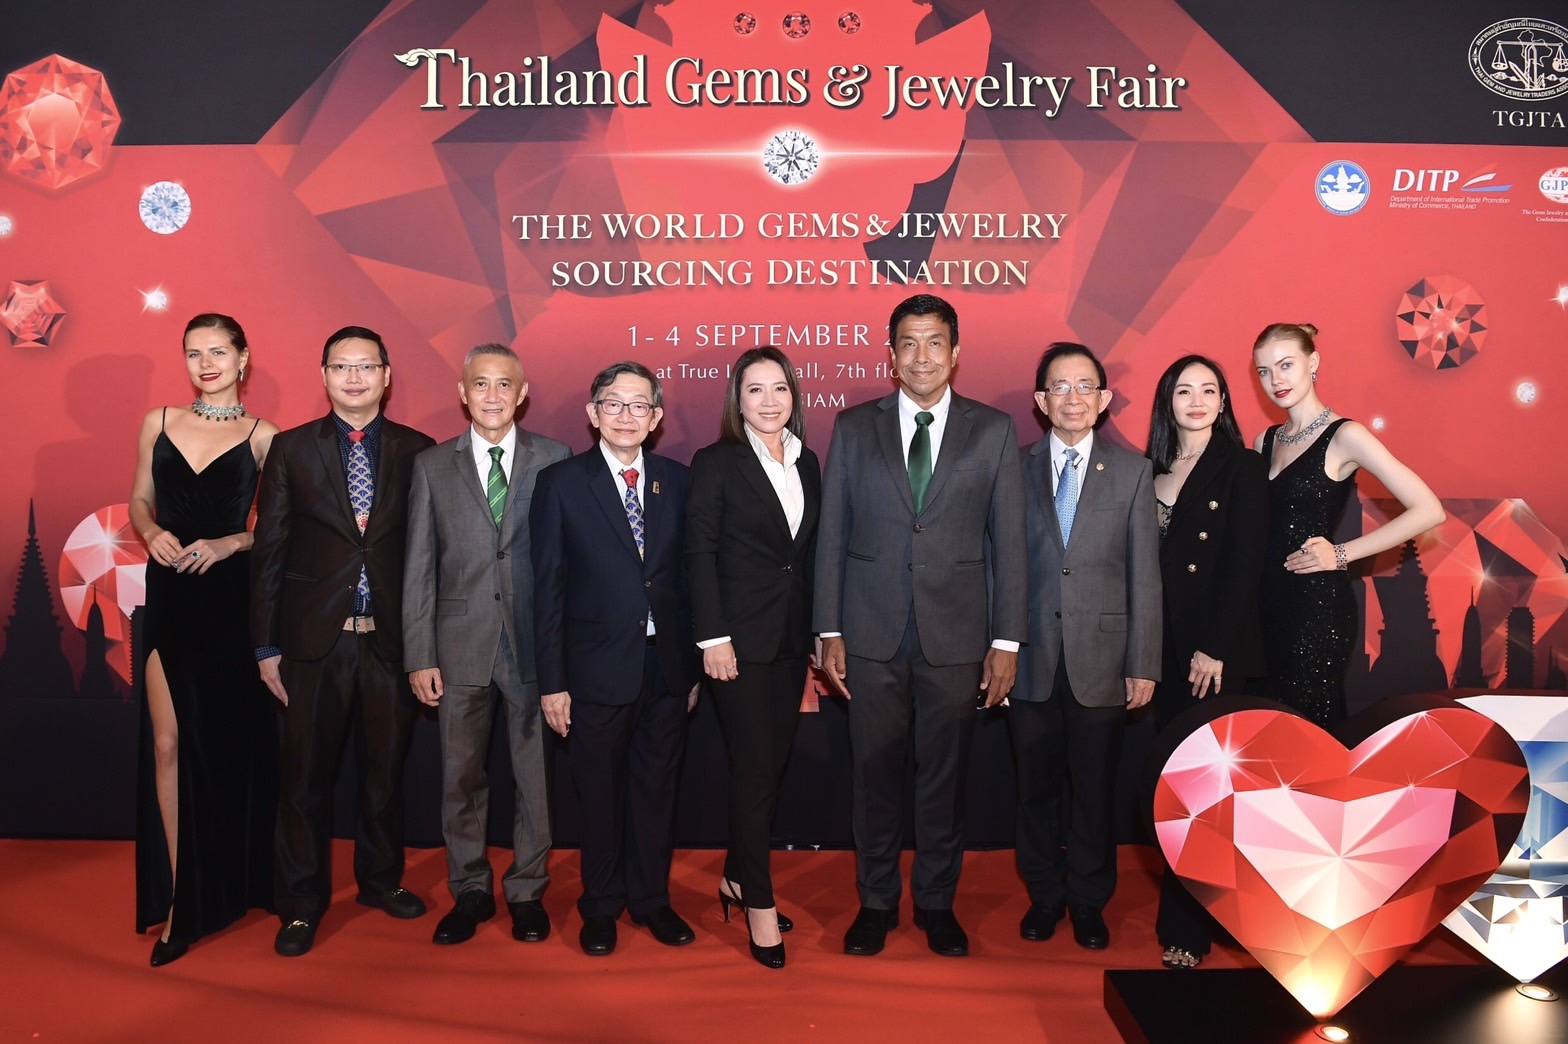 ข่าวแฟชั่น - สมาคมผู้ค้าอัญมณีไทยและเครื่องประดับ จัดงาน Thailand Gems & Jewelry Fair 2022 หวังดันไทยเป็นตัวเลือกแรกสำหรับคู่ค้าทั่วโลก